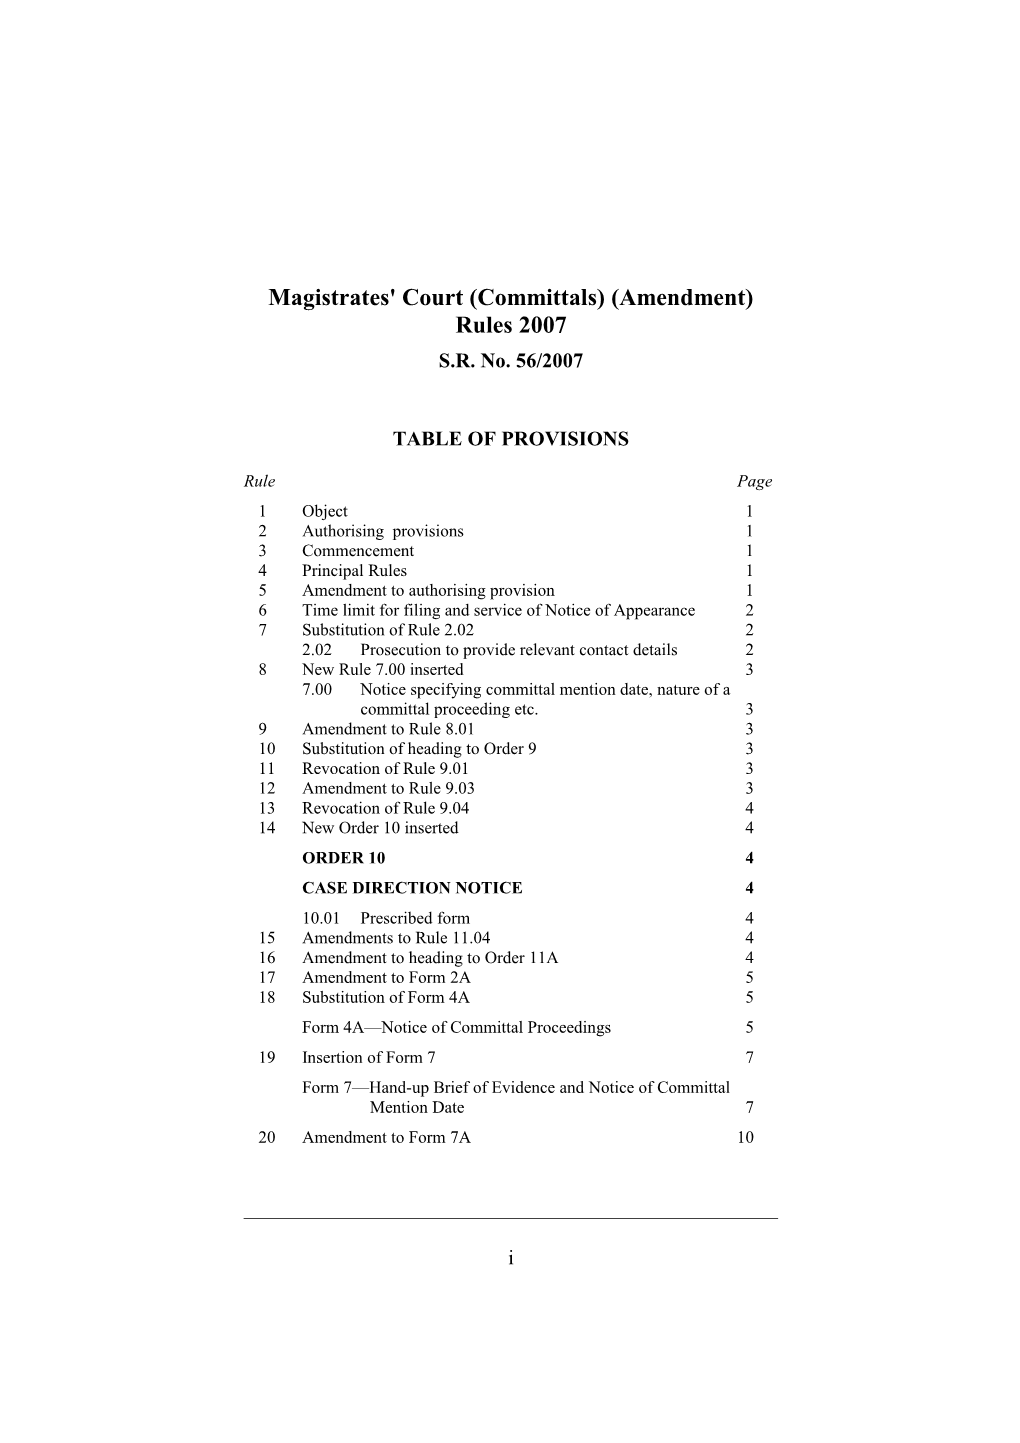 Magistrates' Court (Committals) (Amendment) Rules 2007